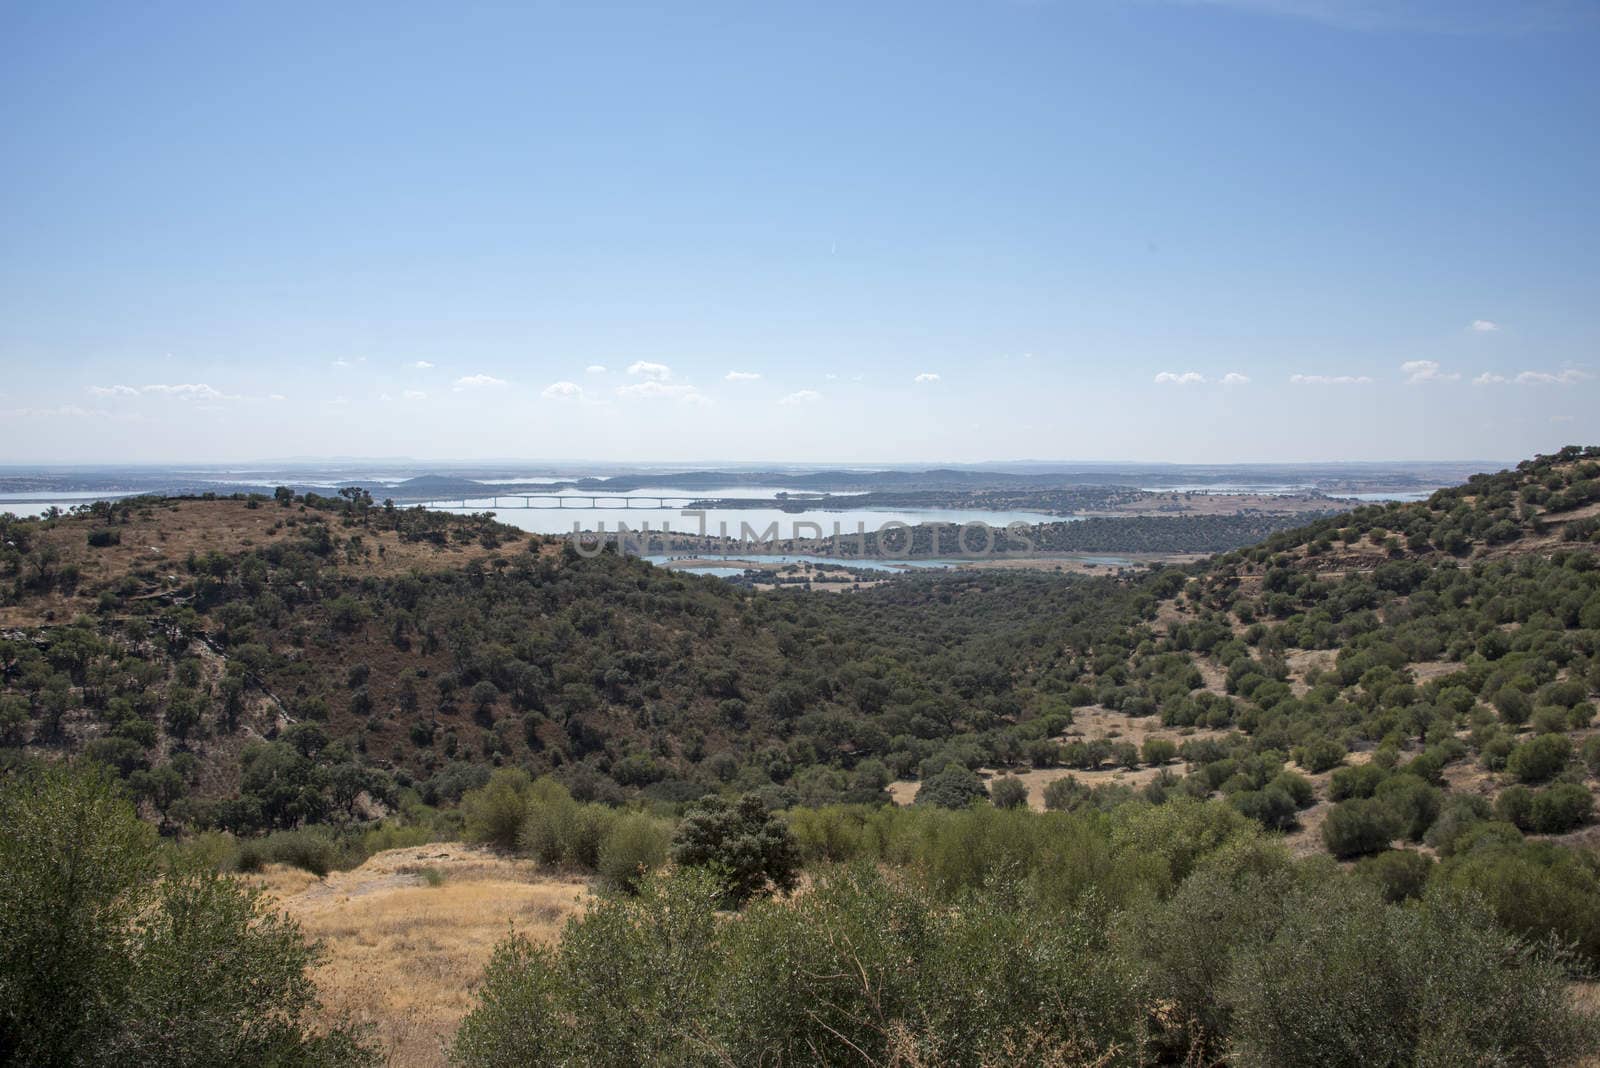   View over the Alqueva, Alentejo, Portugal